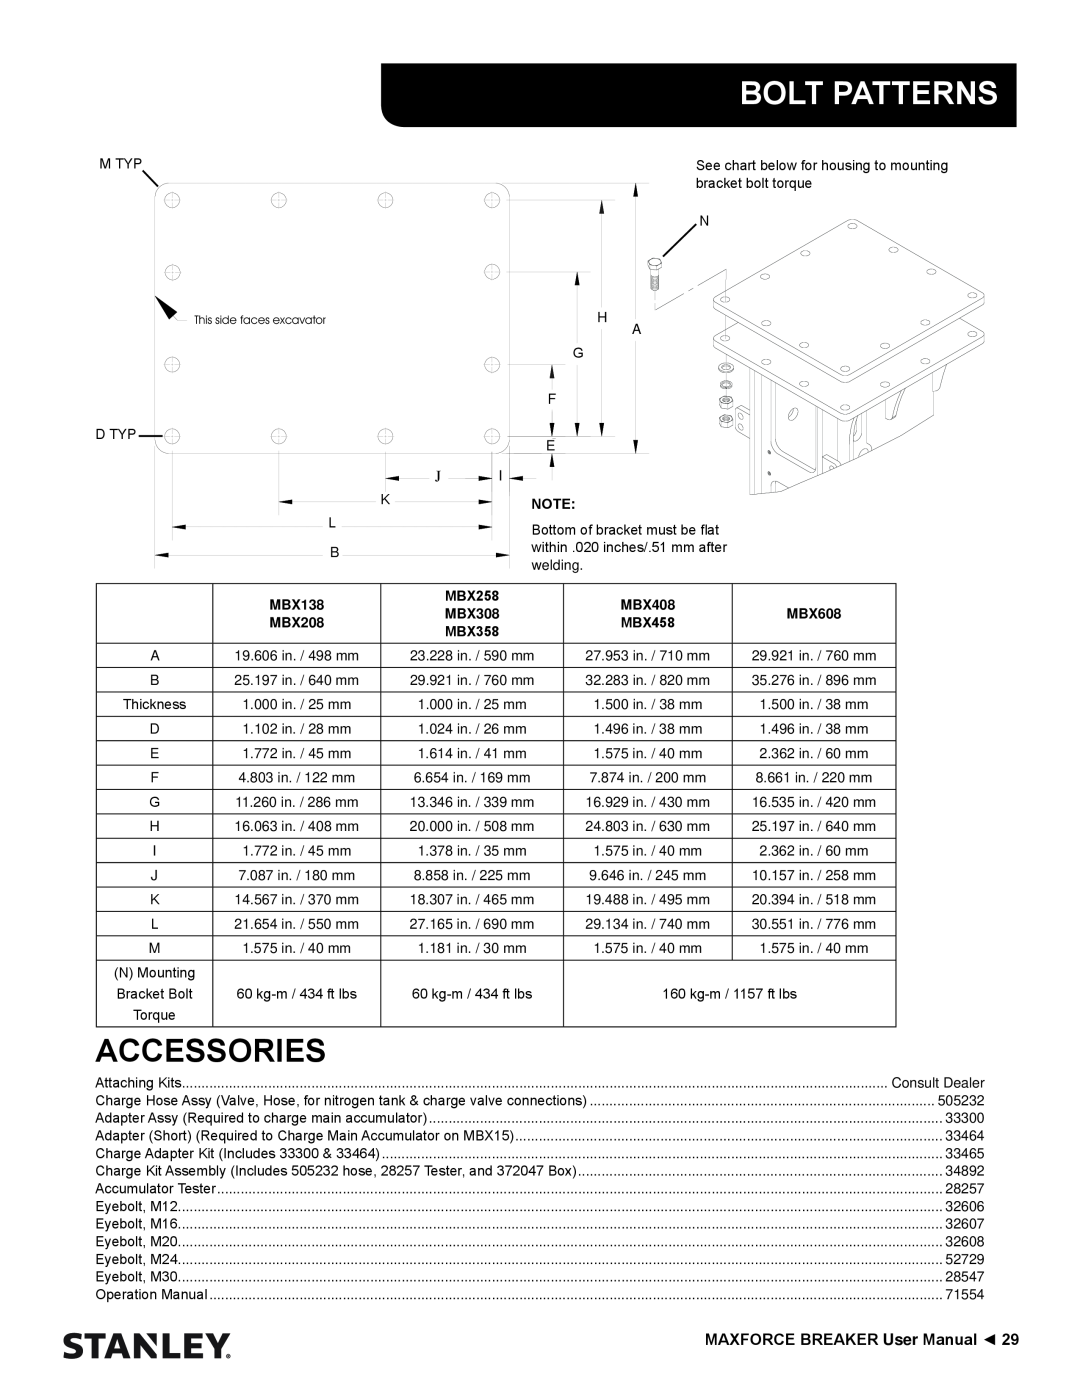 Stanley Black & Decker MBX138 thru MBX608 user manual Bolt Patterns, Accessories, MBX258, MBX308, MBX358 